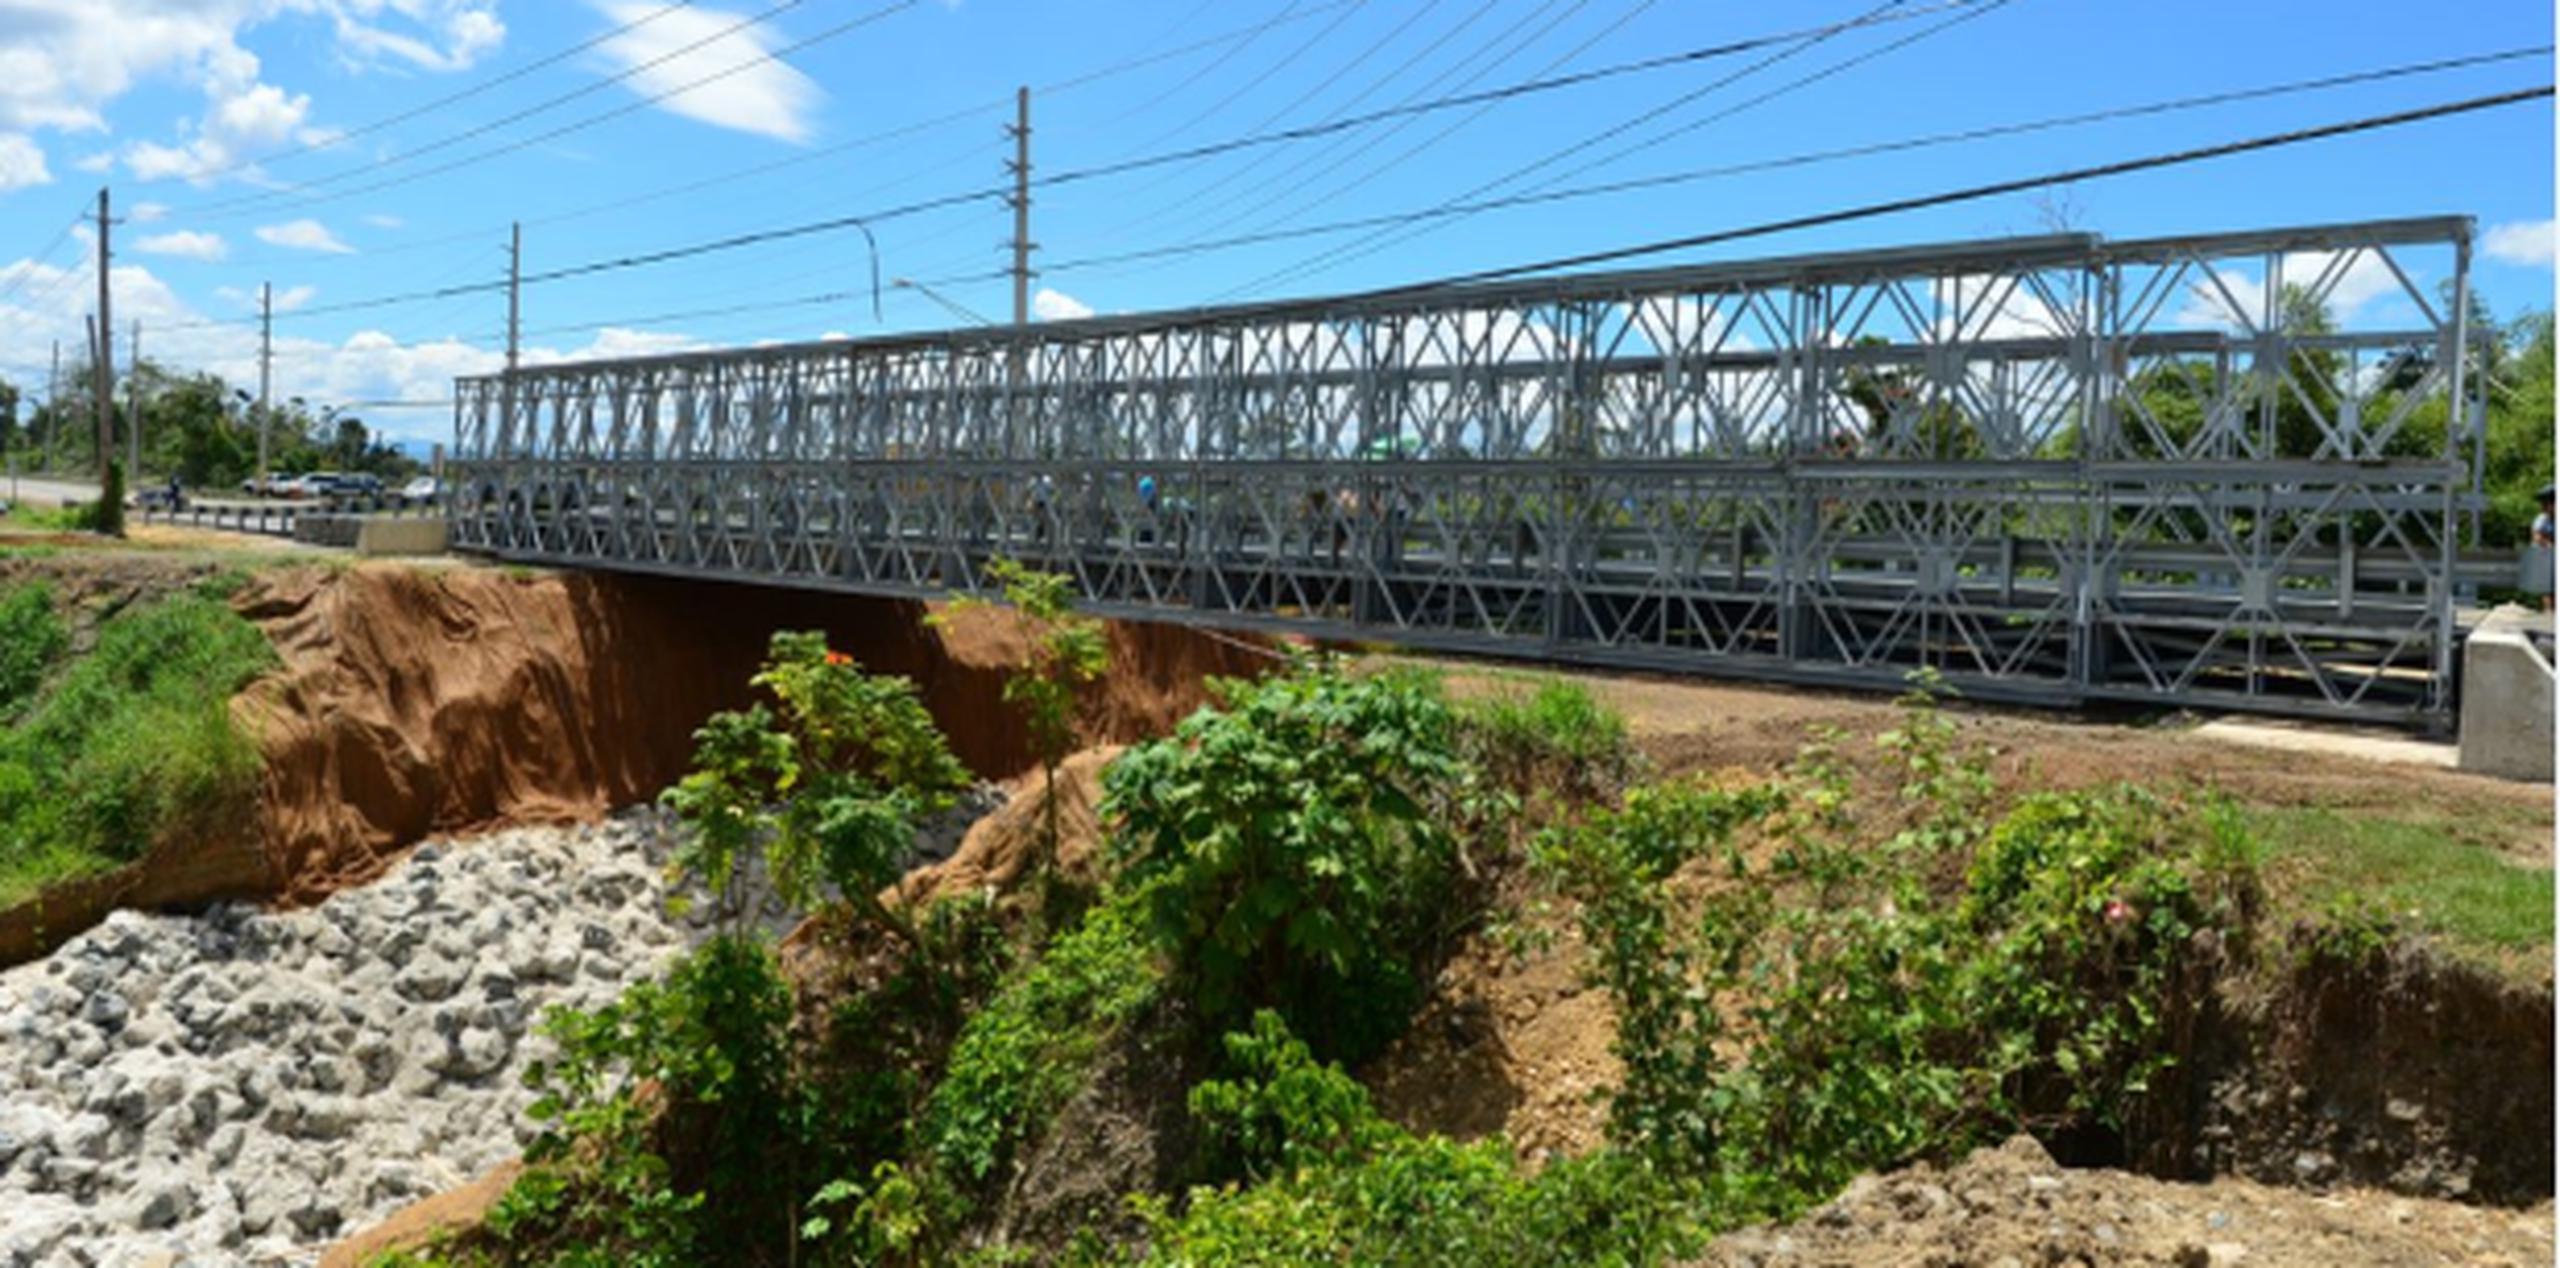 Ambos puentes restablecen el acceso de una de las principales vías entre los pueblos del noroeste de la Isla. (luis.alcaladelolmo@gfrmedia.com)